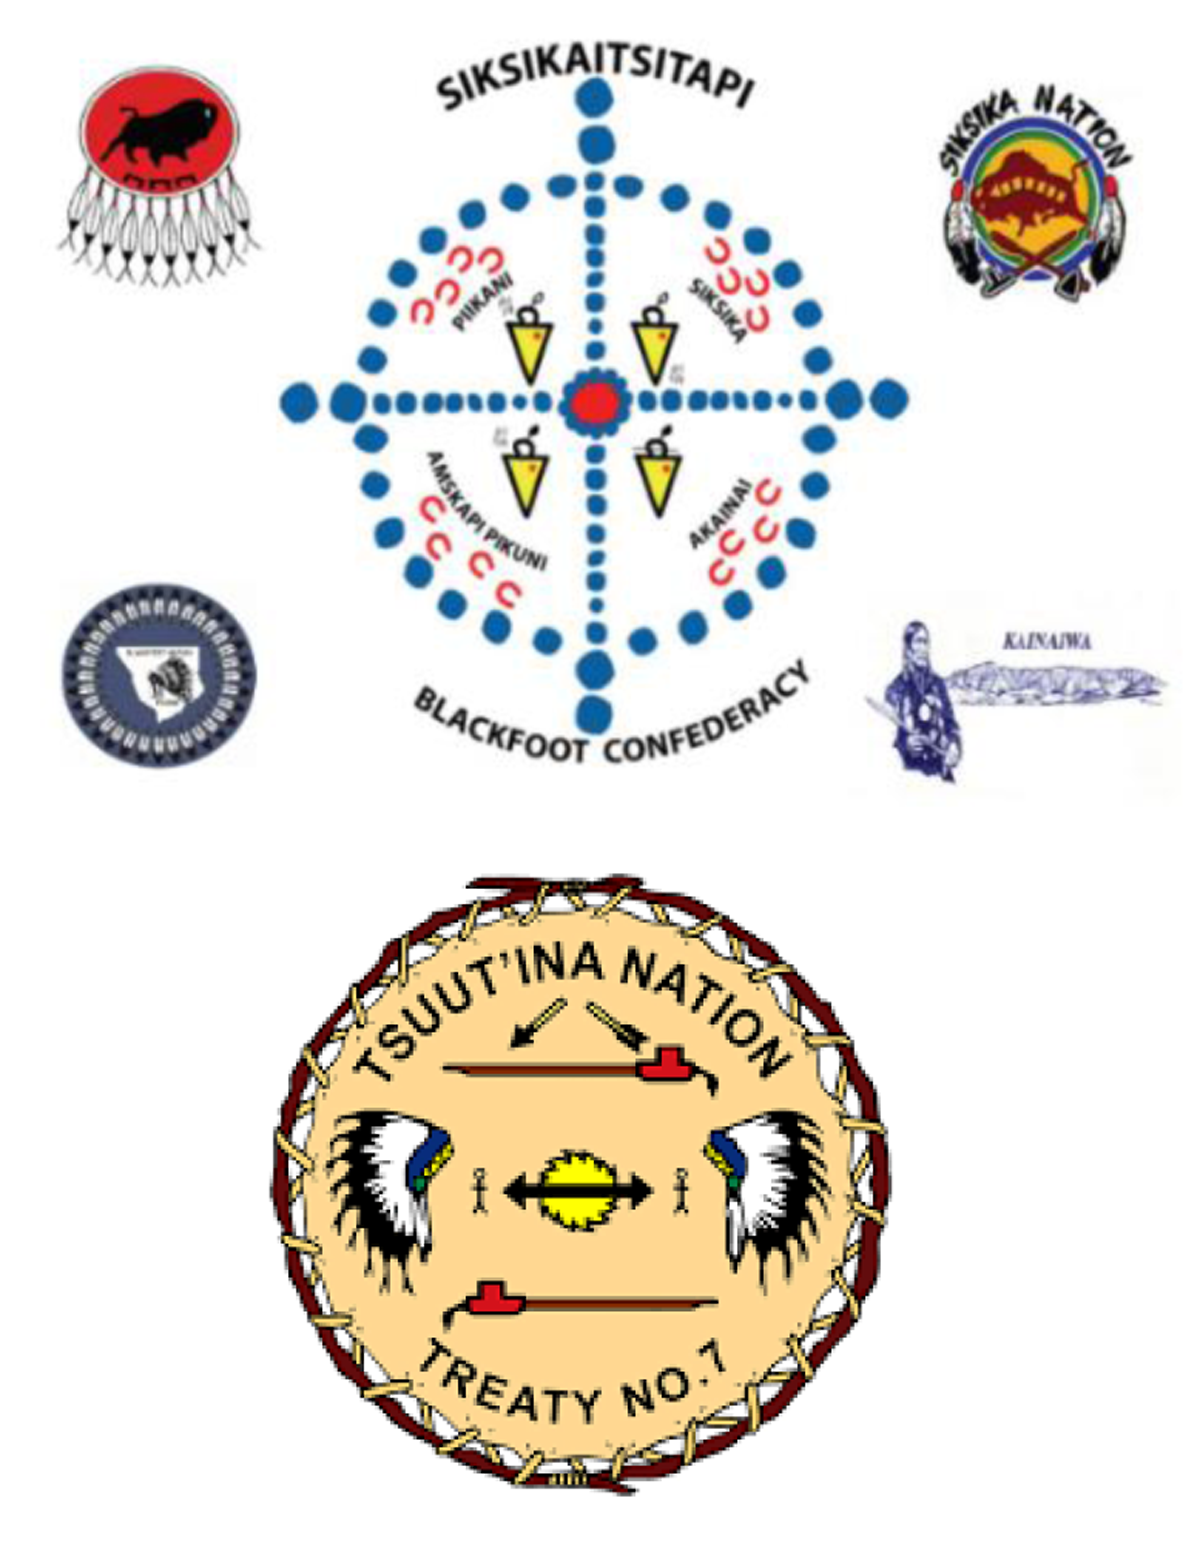 En haut – Symbole de la Confédération des Pieds-Noirs; En bas – Symbole de la nation tsuut’ina; 



